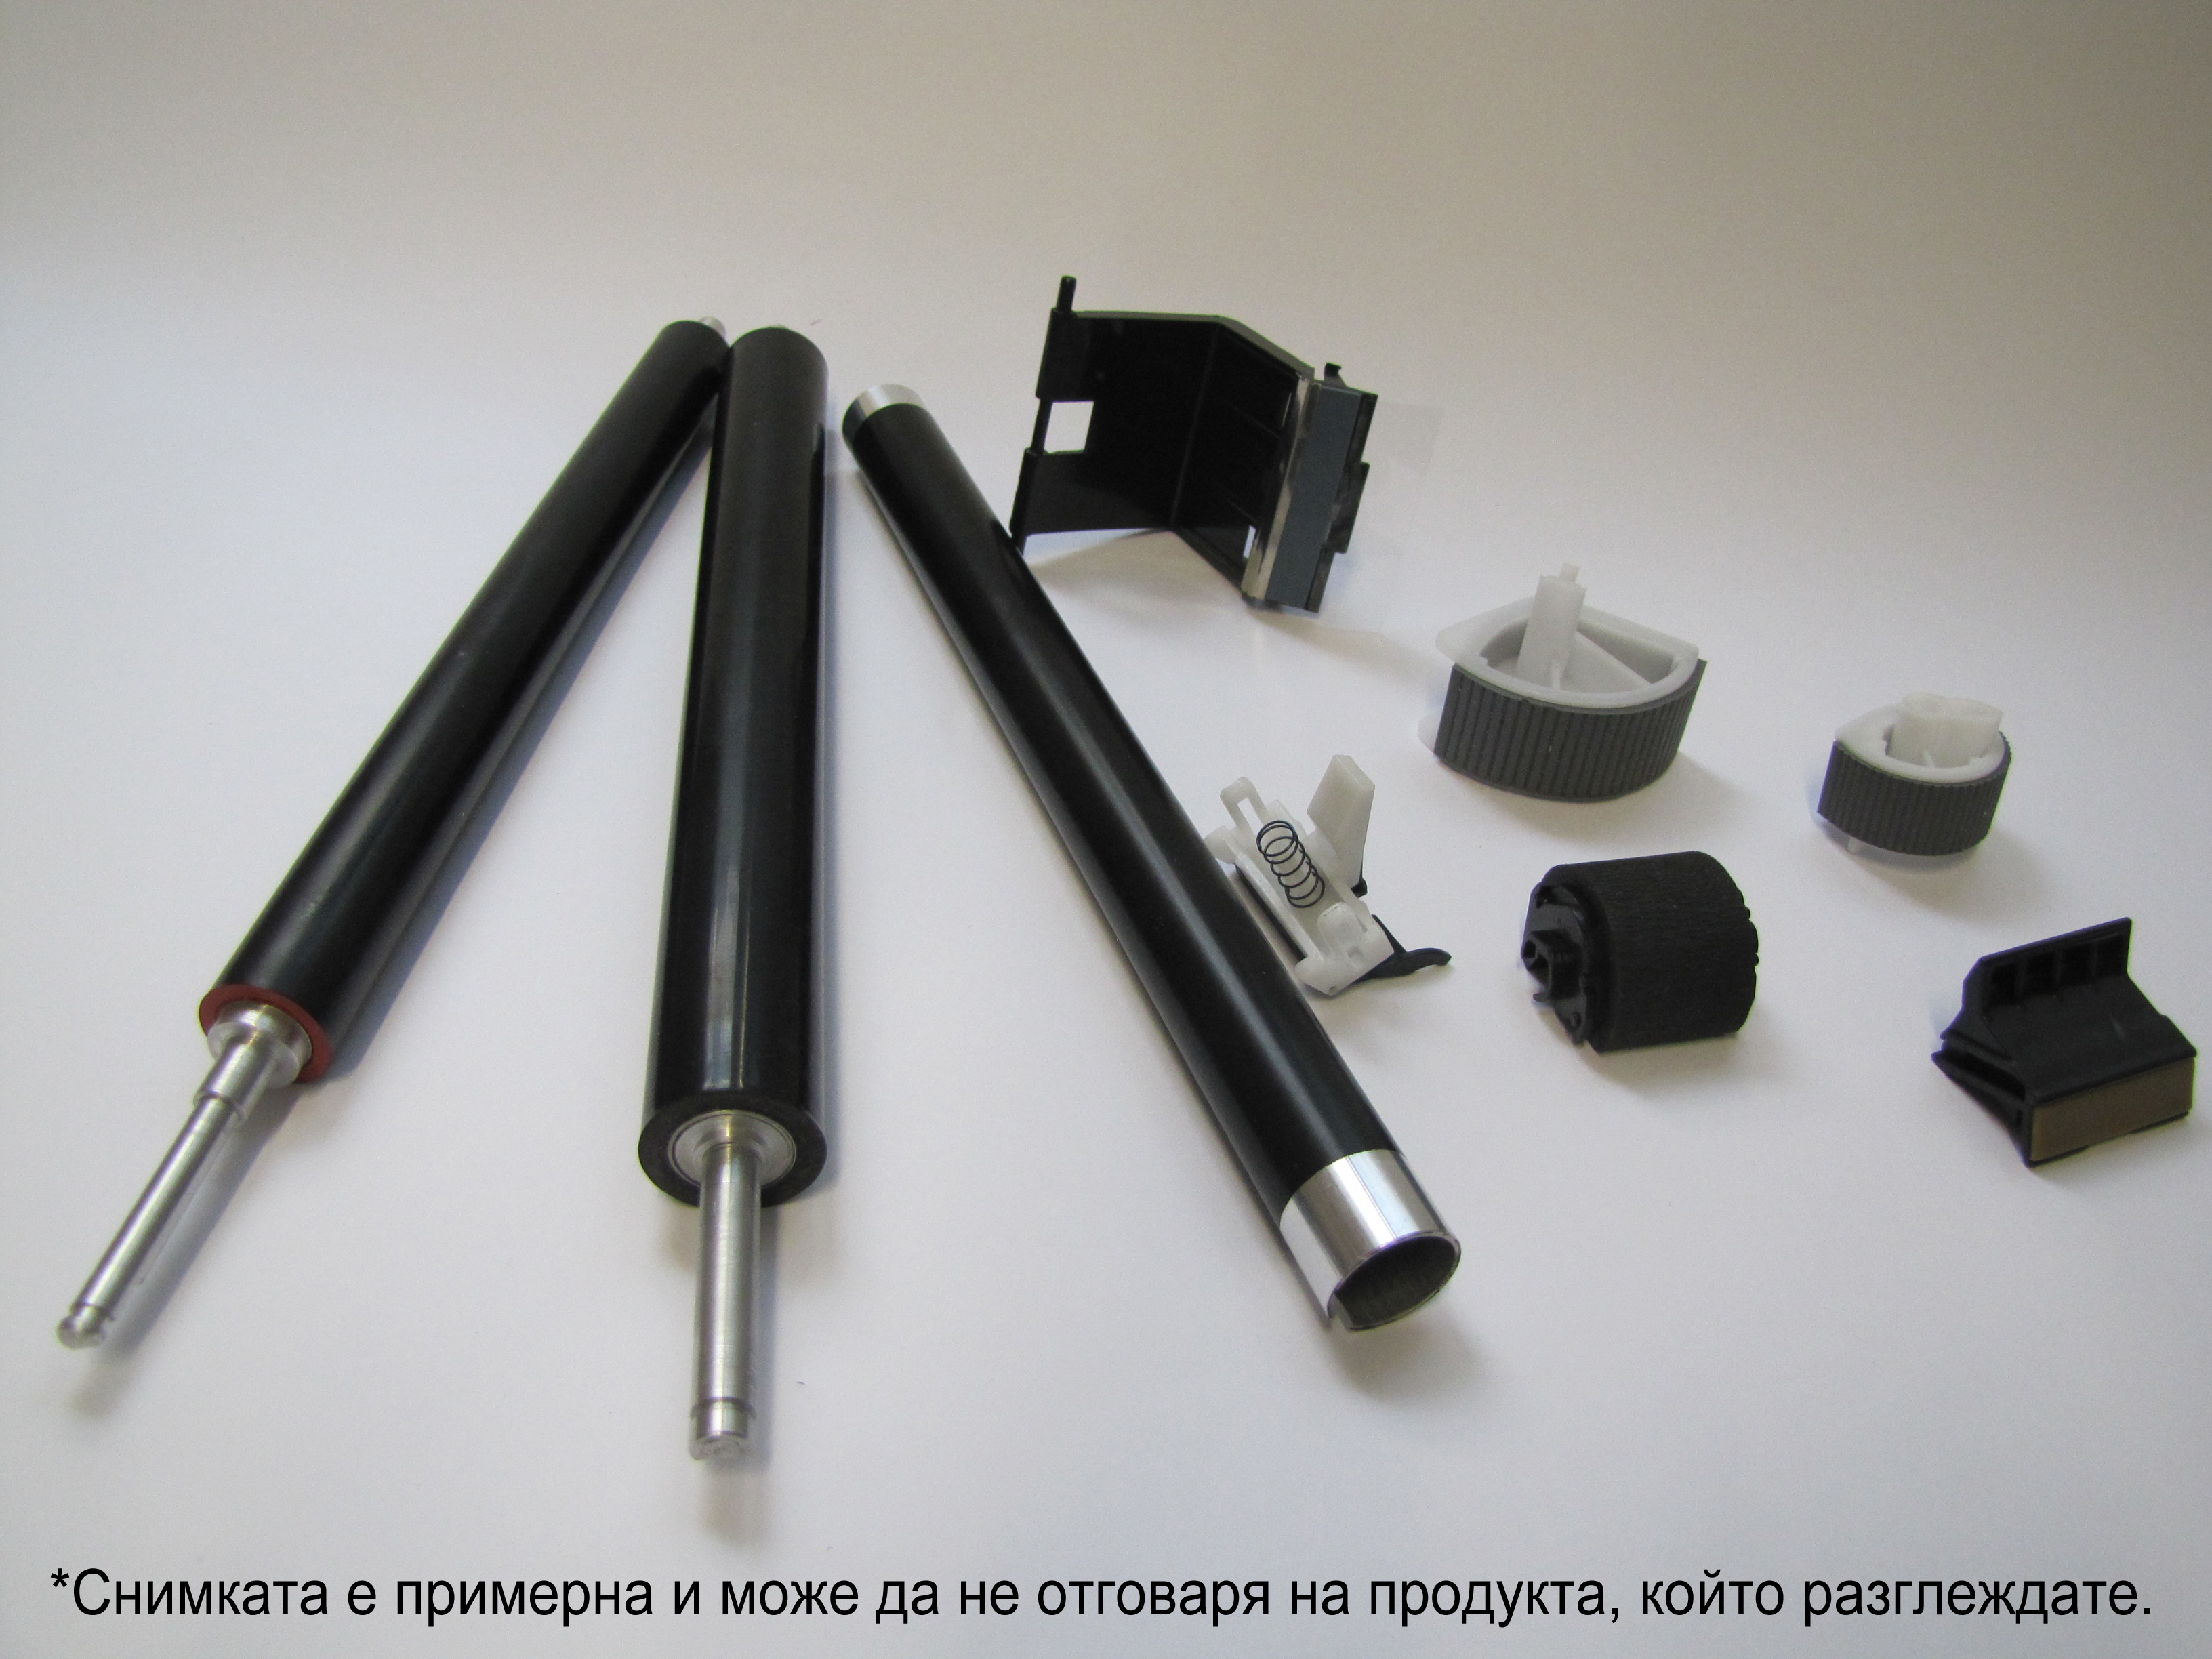 Горна изпичаща ролка за принтери и печатащи устройства на Konica Minolta Bizhub 363 . Ниски цени, прецизно изпълнение, високо качество.